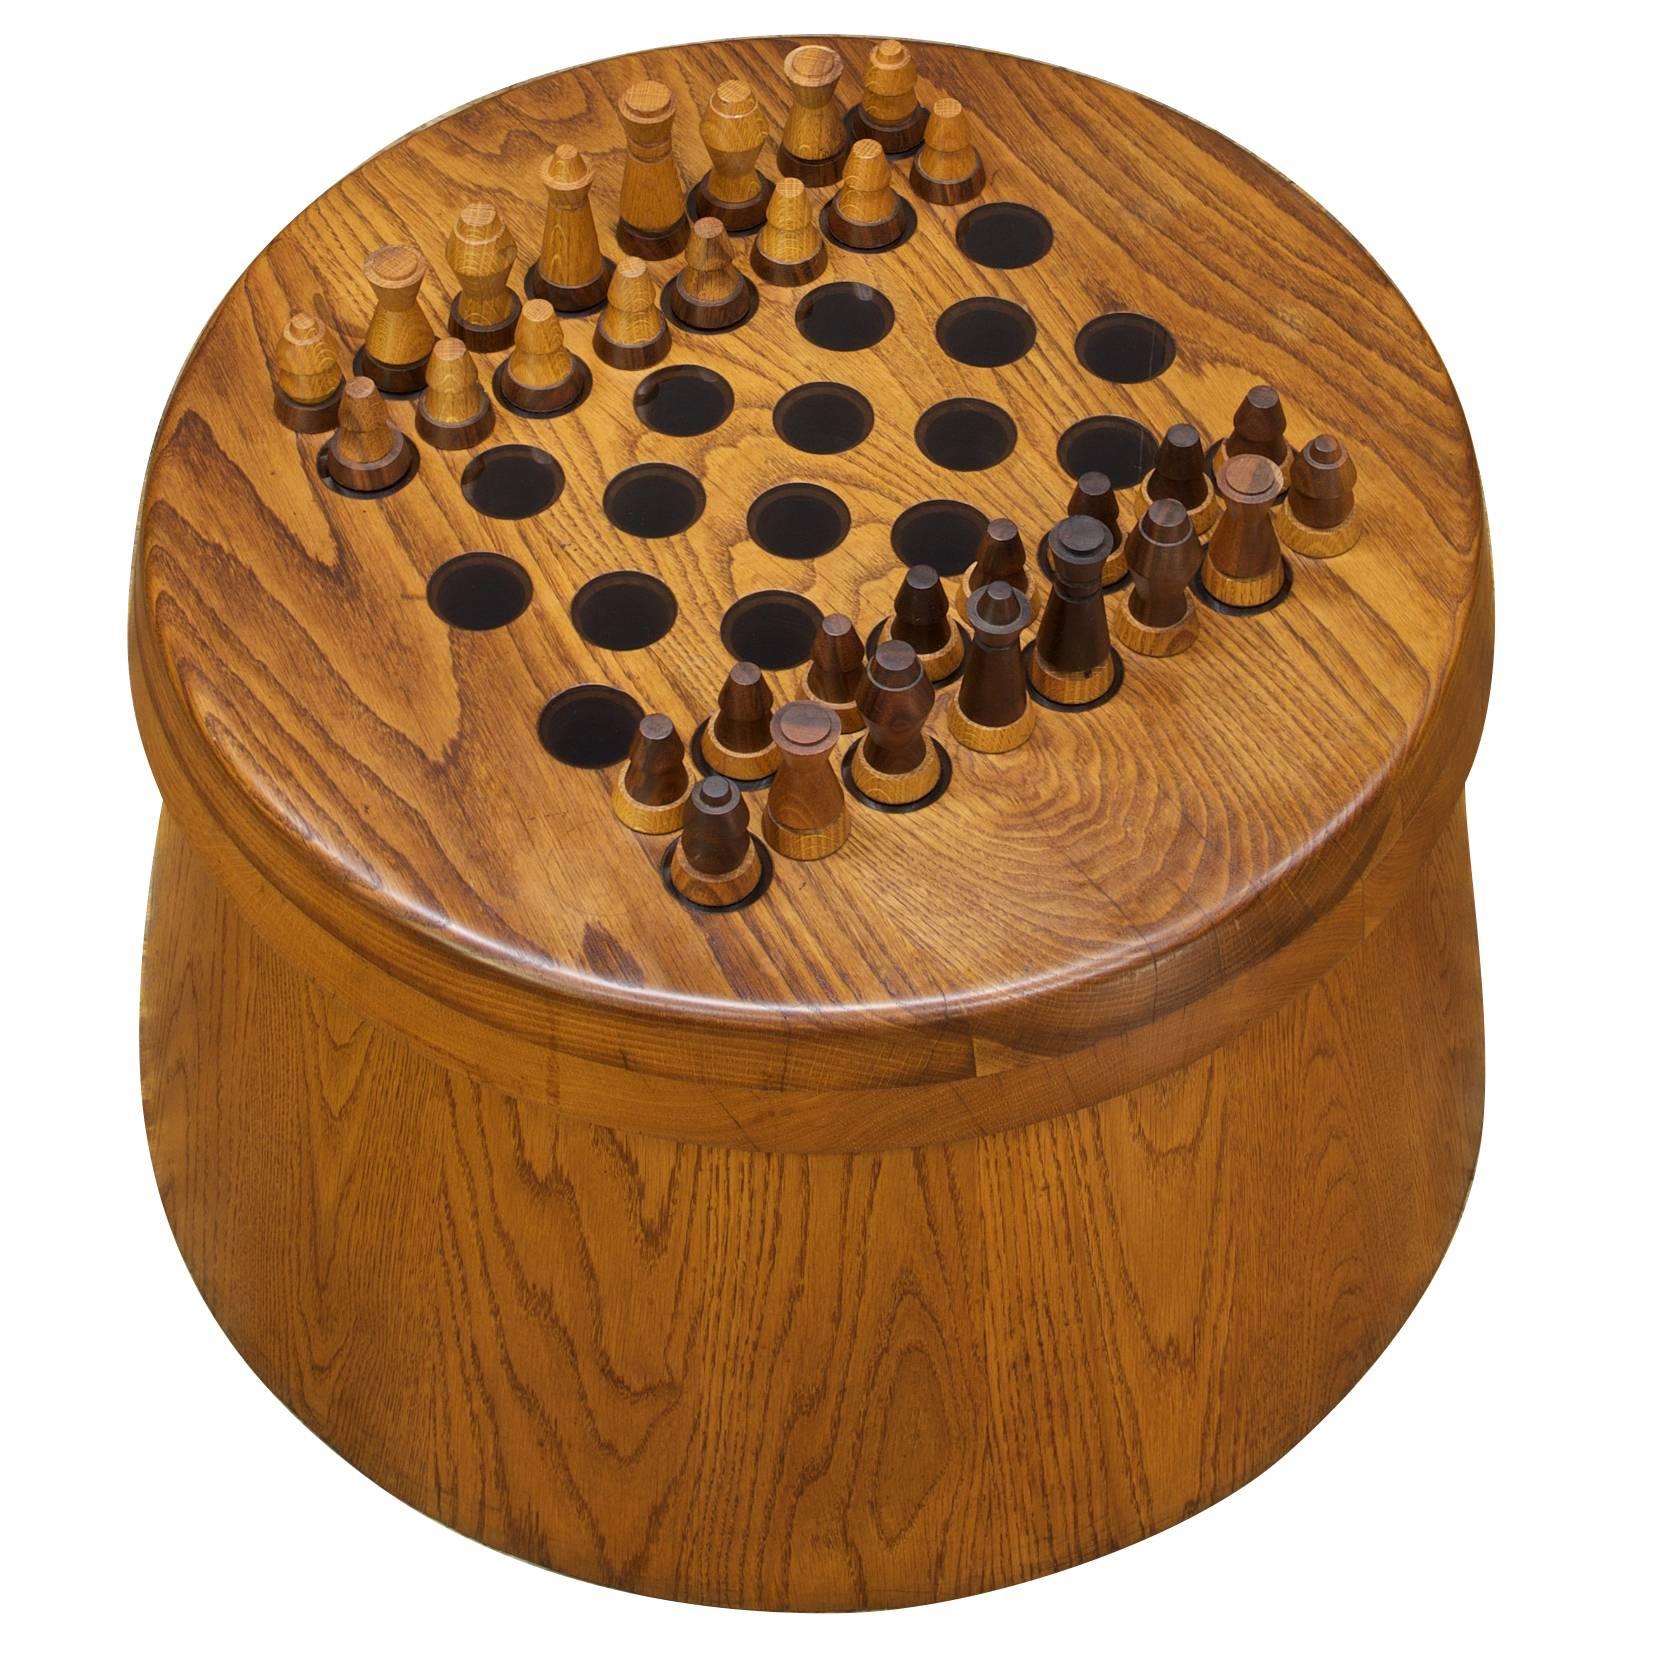 1950s Oak Chessboard Table+Chess Set Barrel Rustic Scandinavian Wegner style